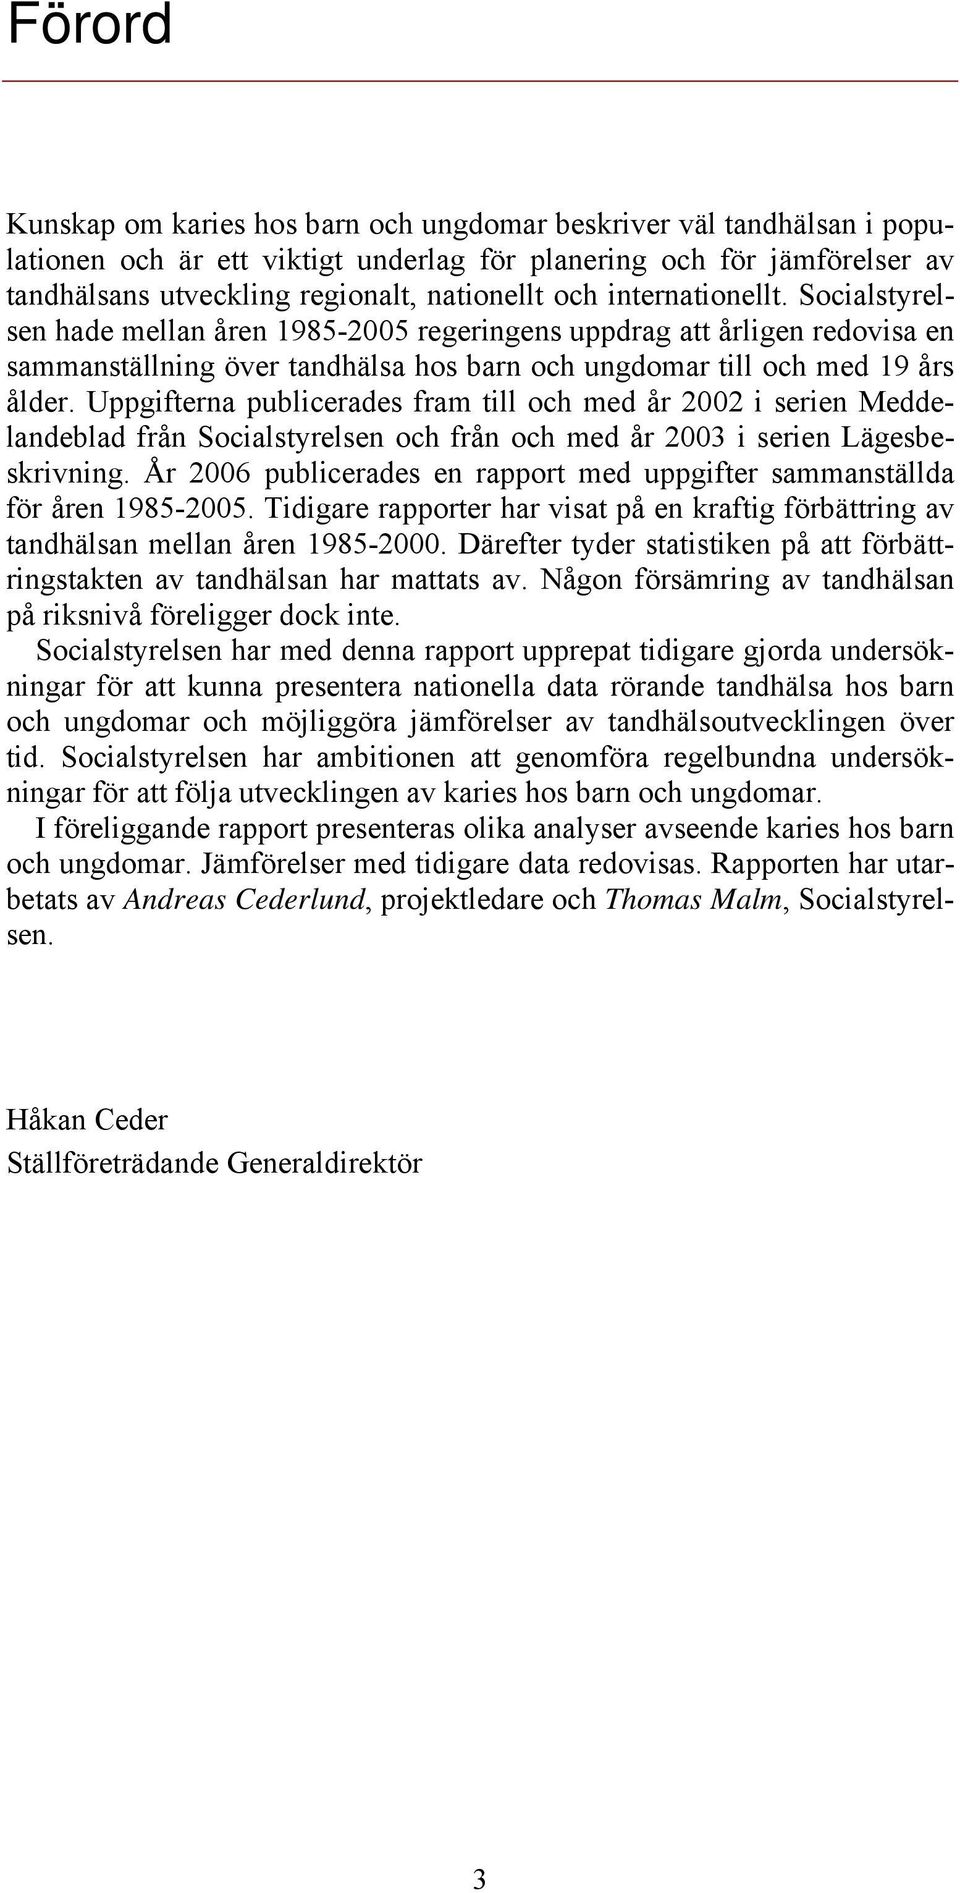 Uppgifterna publicerades fram till och med år 2002 i serien Meddelandeblad från Socialstyrelsen och från och med år 2003 i serien Lägesbeskrivning.